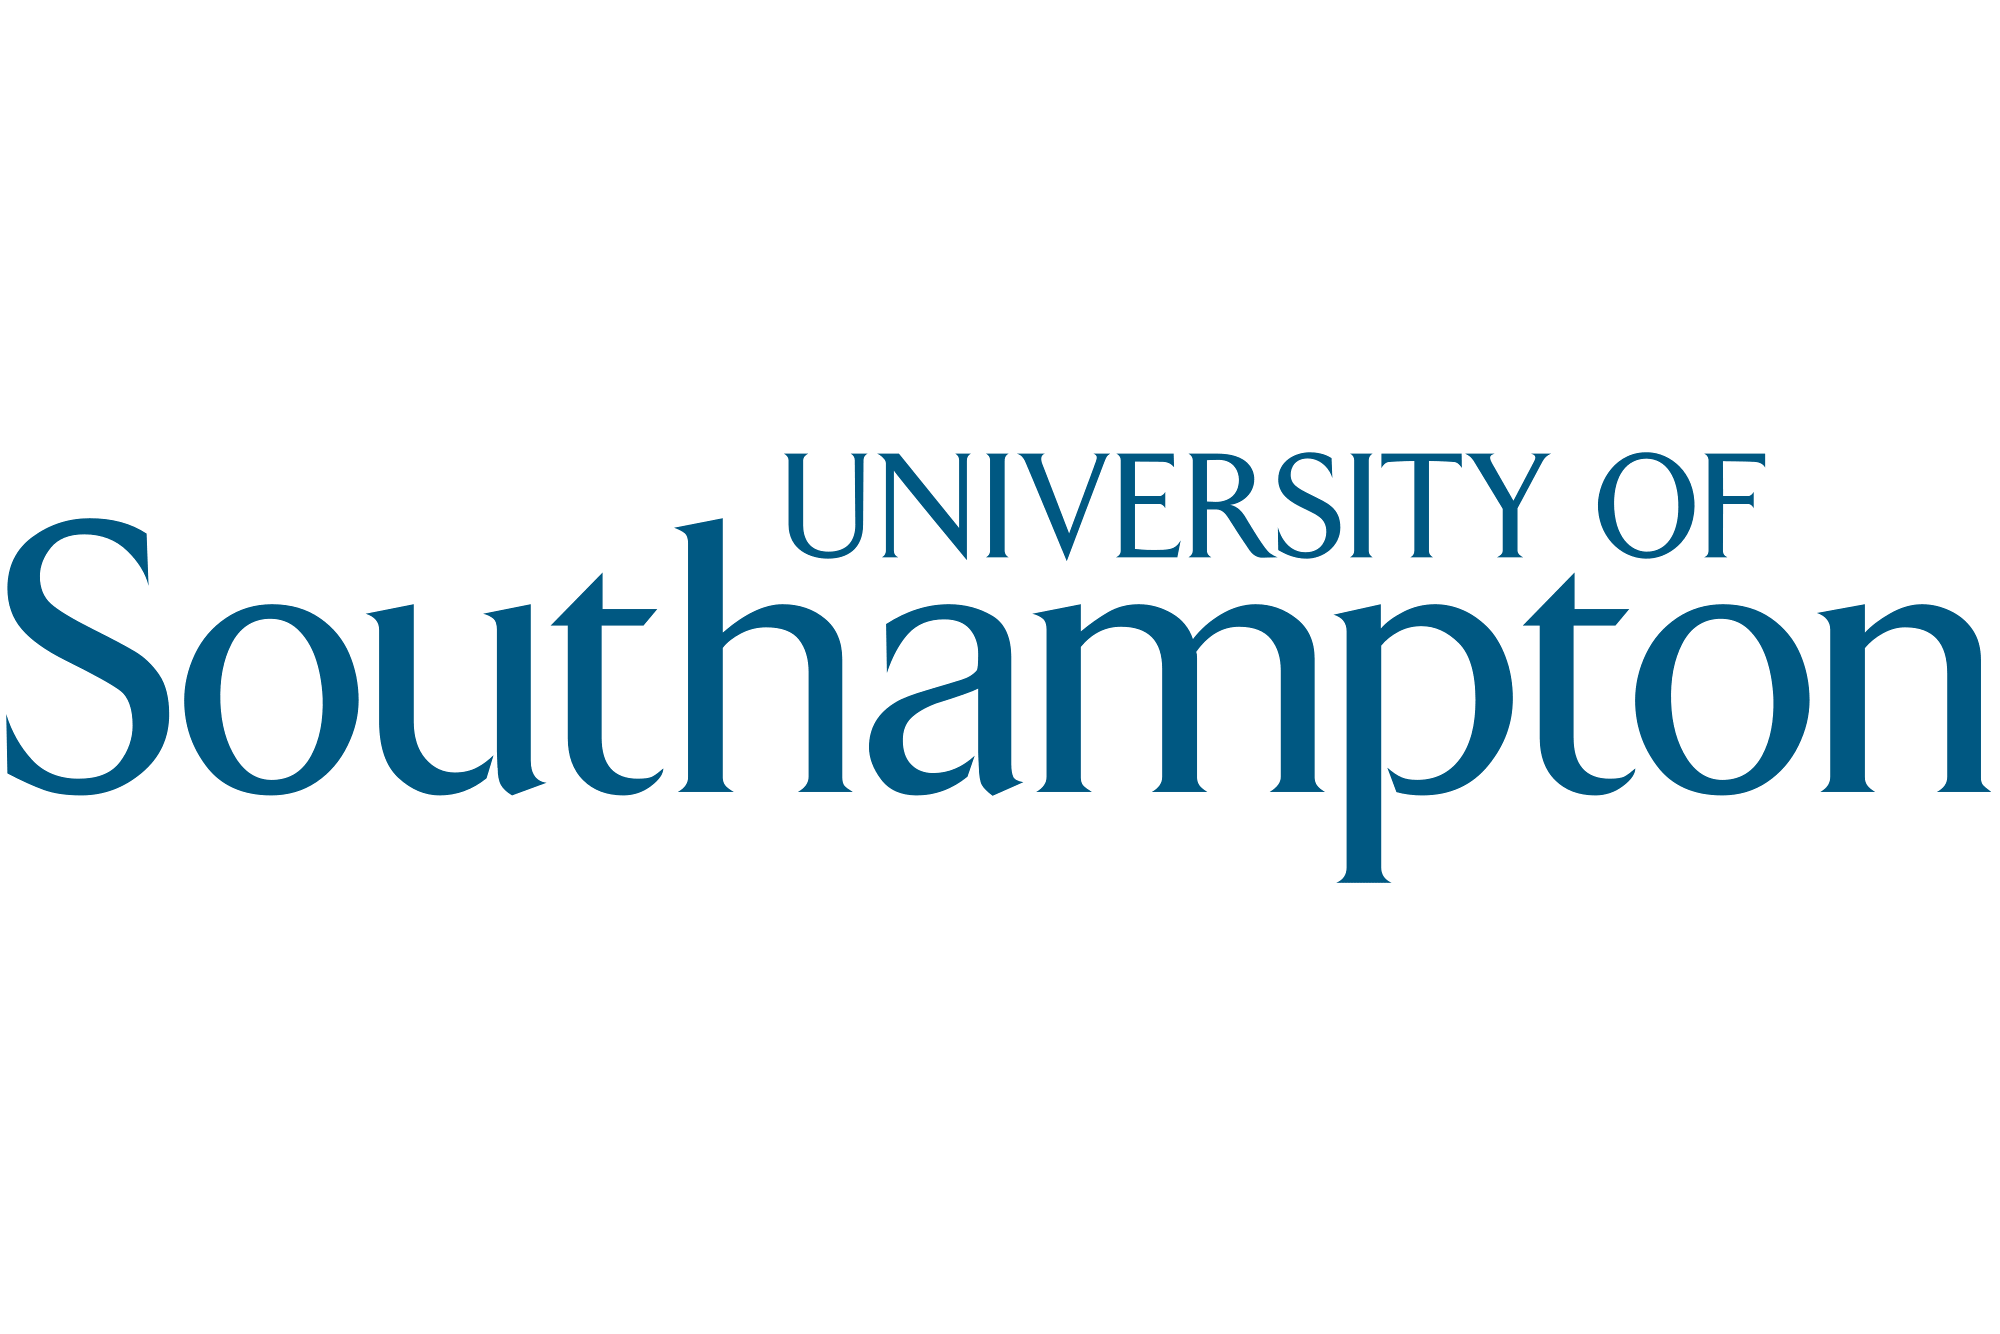 منحة جامعة ساوثهامبتون للحصول على الدكتوراه بالمملكة المتحدة 2021 (ممولة)